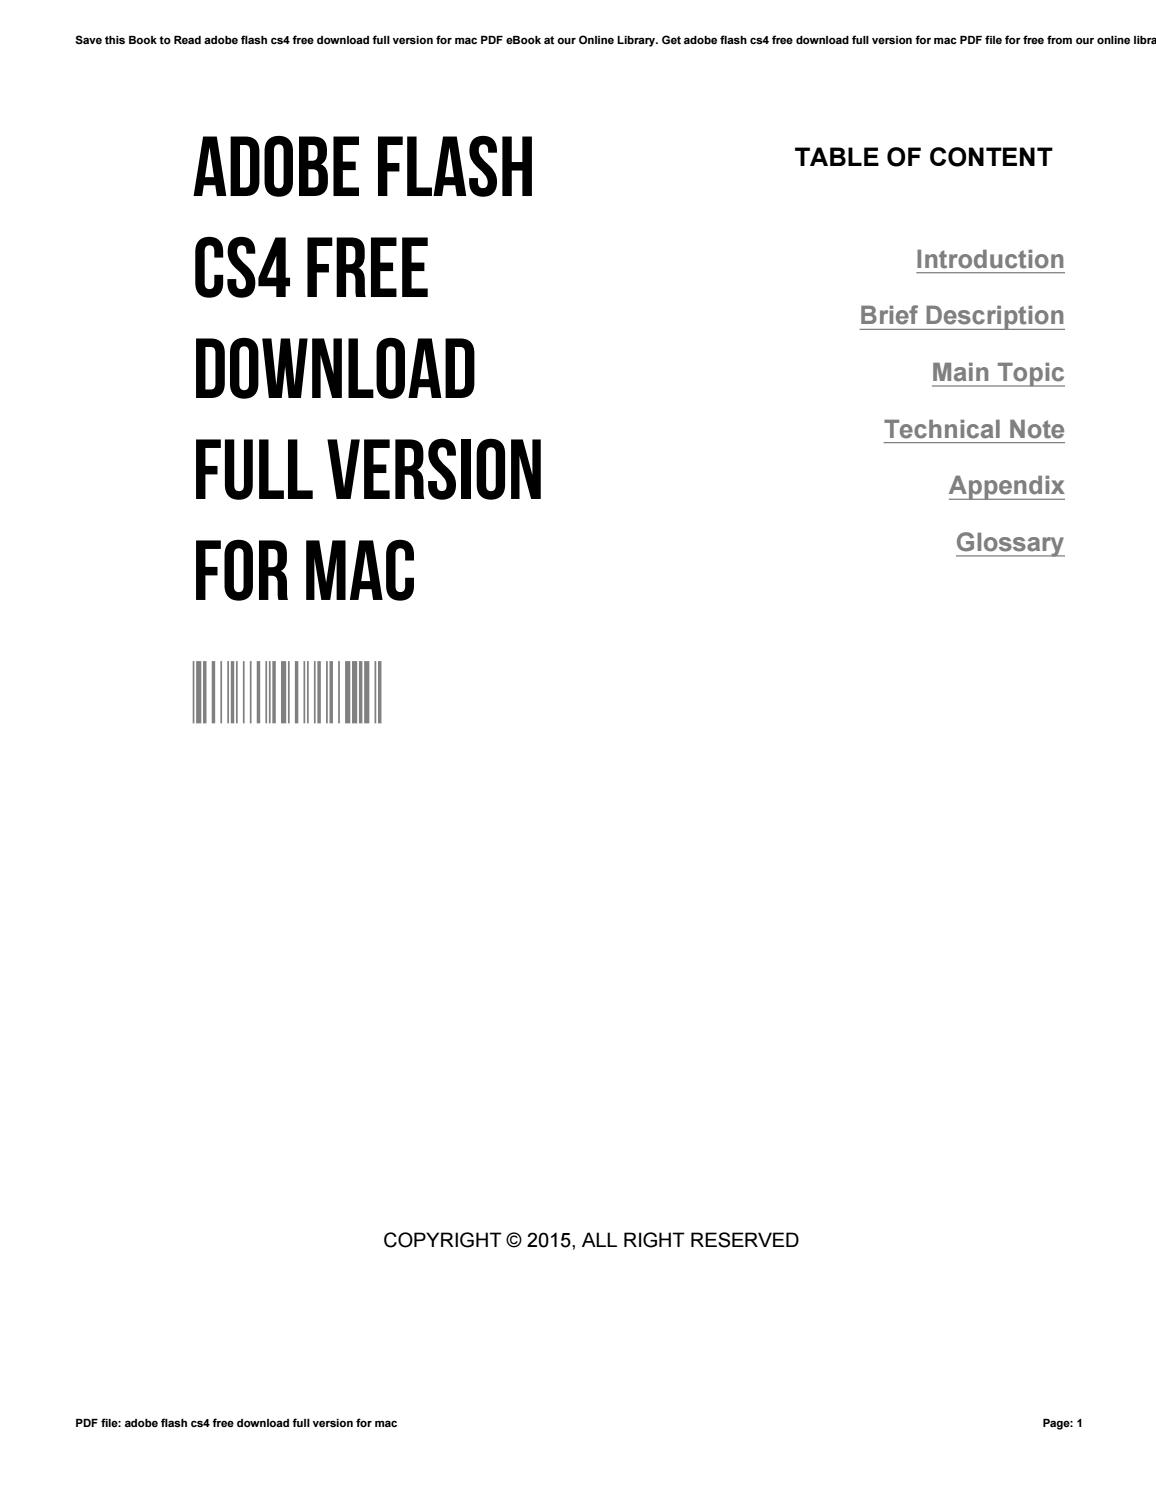 Indesign cs4 mac free download